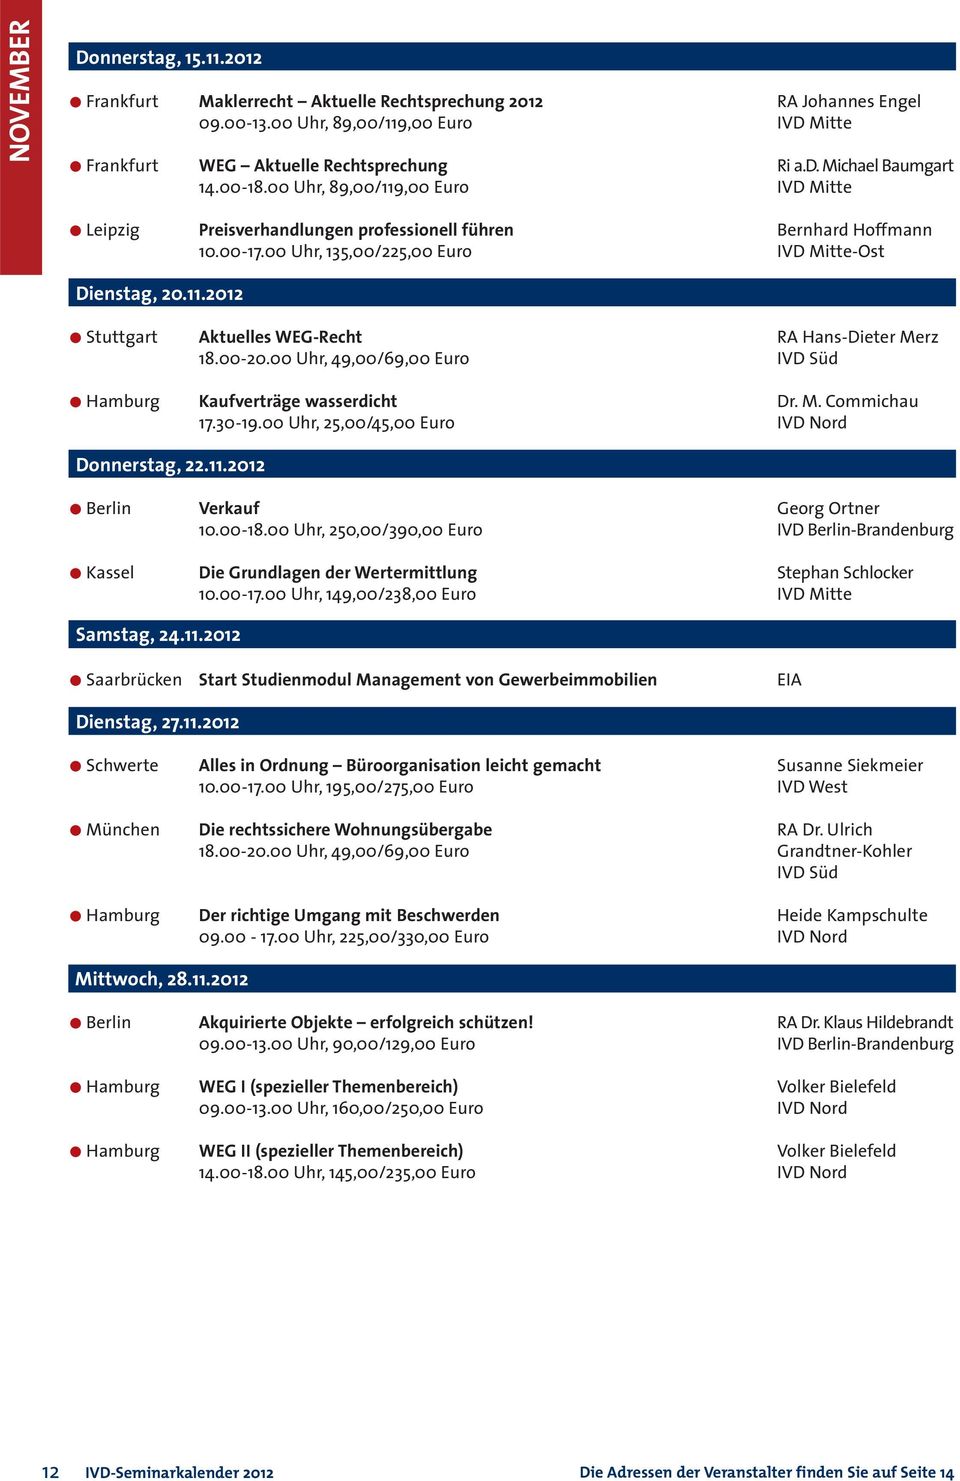 00-20.00 Uhr, 49,00/69,00 Euro IVD Süd Hamburg Kaufverträge wasserdicht Dr. M. Commichau Donnerstag, 22.11.2012 Berlin Verkauf Georg Ortner 10.00-18.